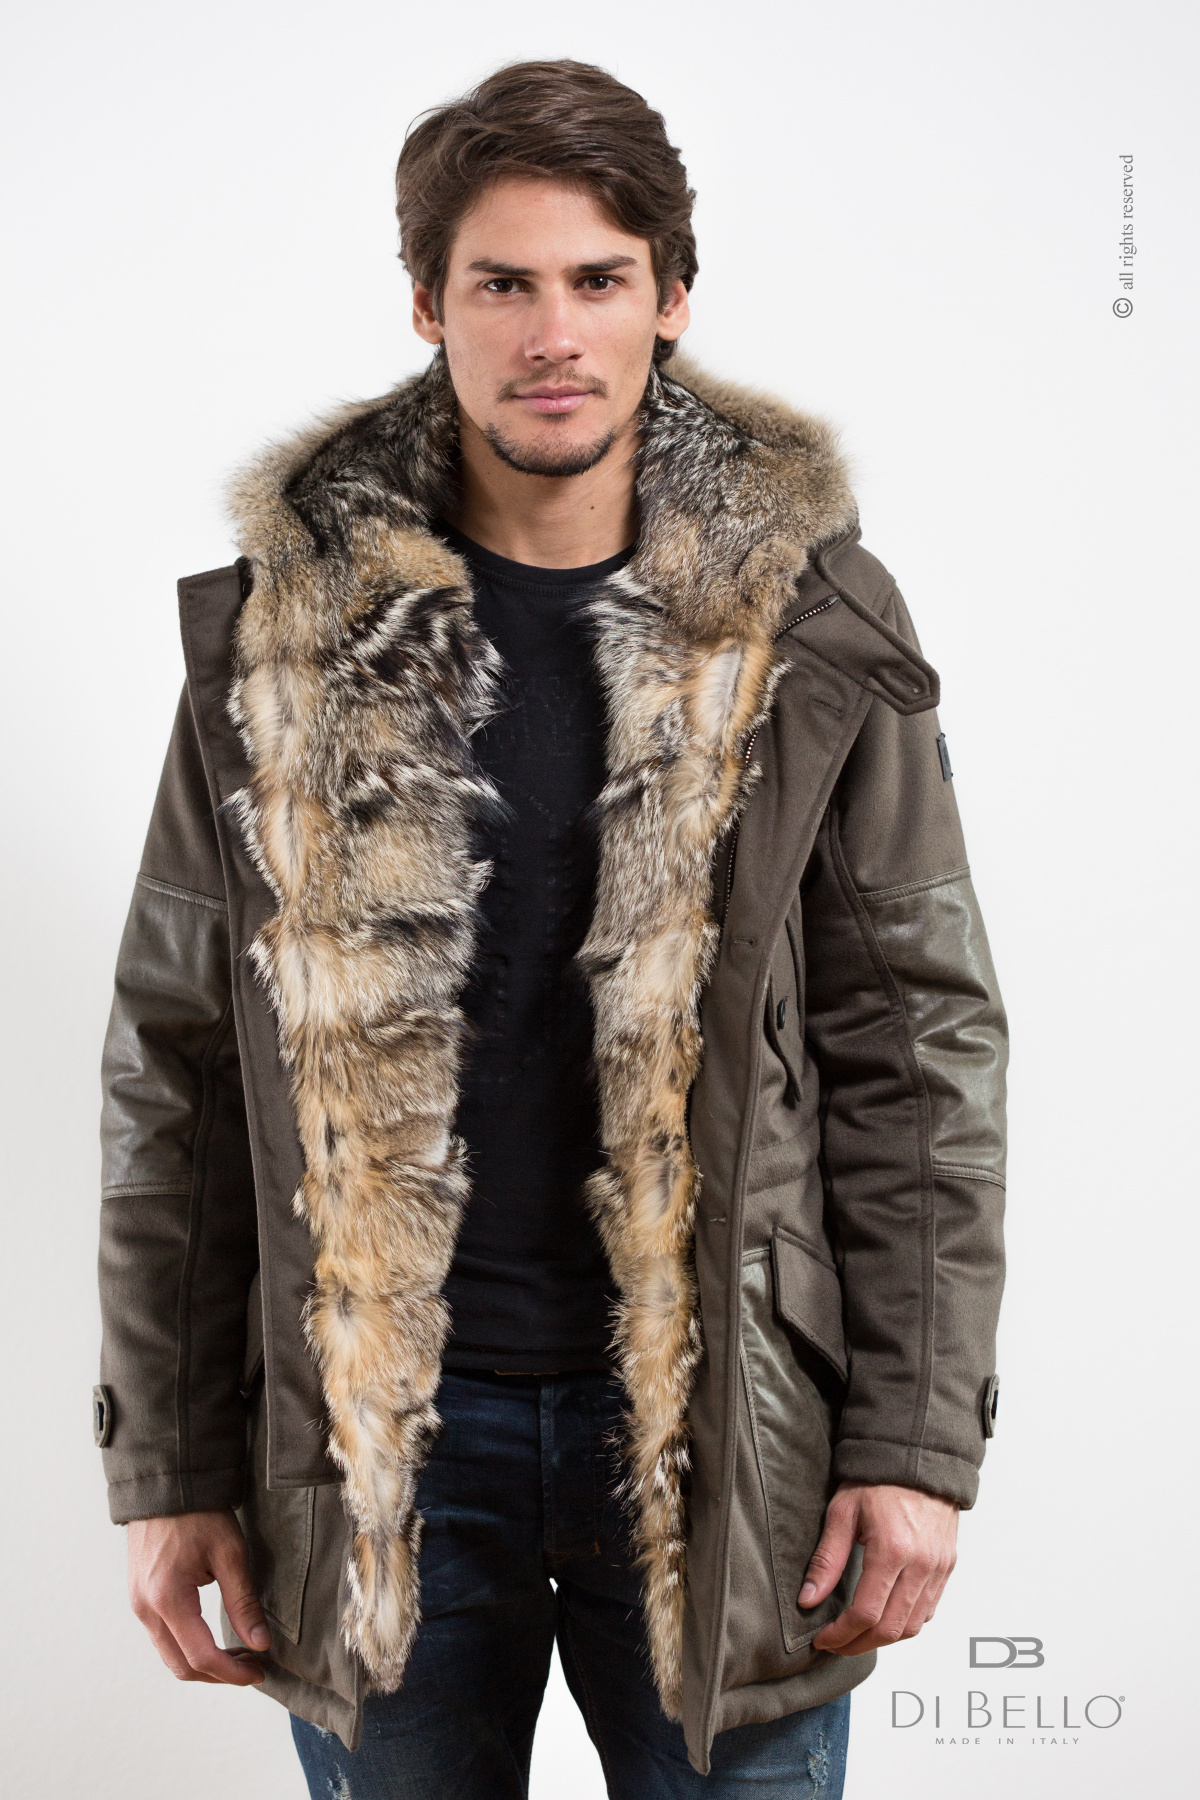 Куртка волки мужская. Куртка just Cavalli мужская зимняя мех волка. Пуховик с мехом волка мужская. Куртка с мехом волка мужская. Куртка с мехом внутри мужская.